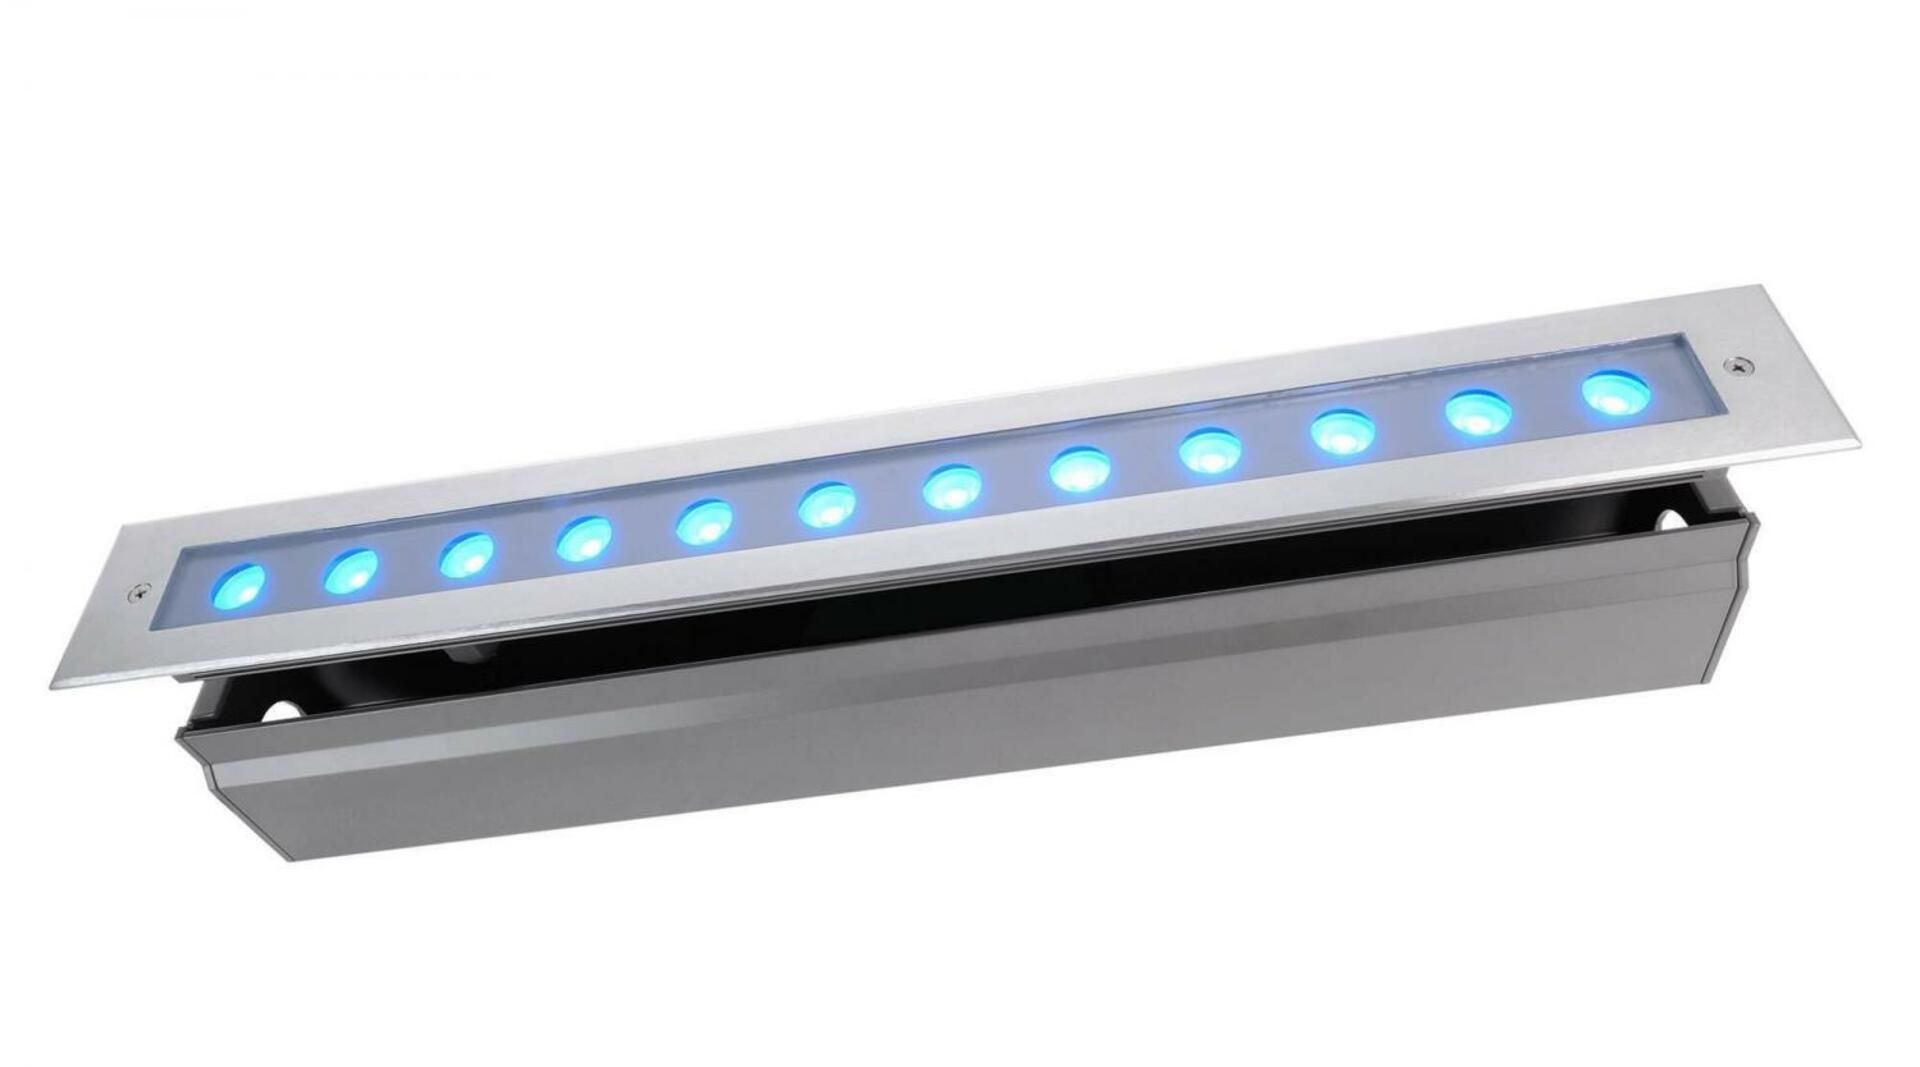 Light Impressions Deko-Light zemní svítidlo Line V RGB 24V DC 21,60 W 340 lm 549 mm stříbrná 730437